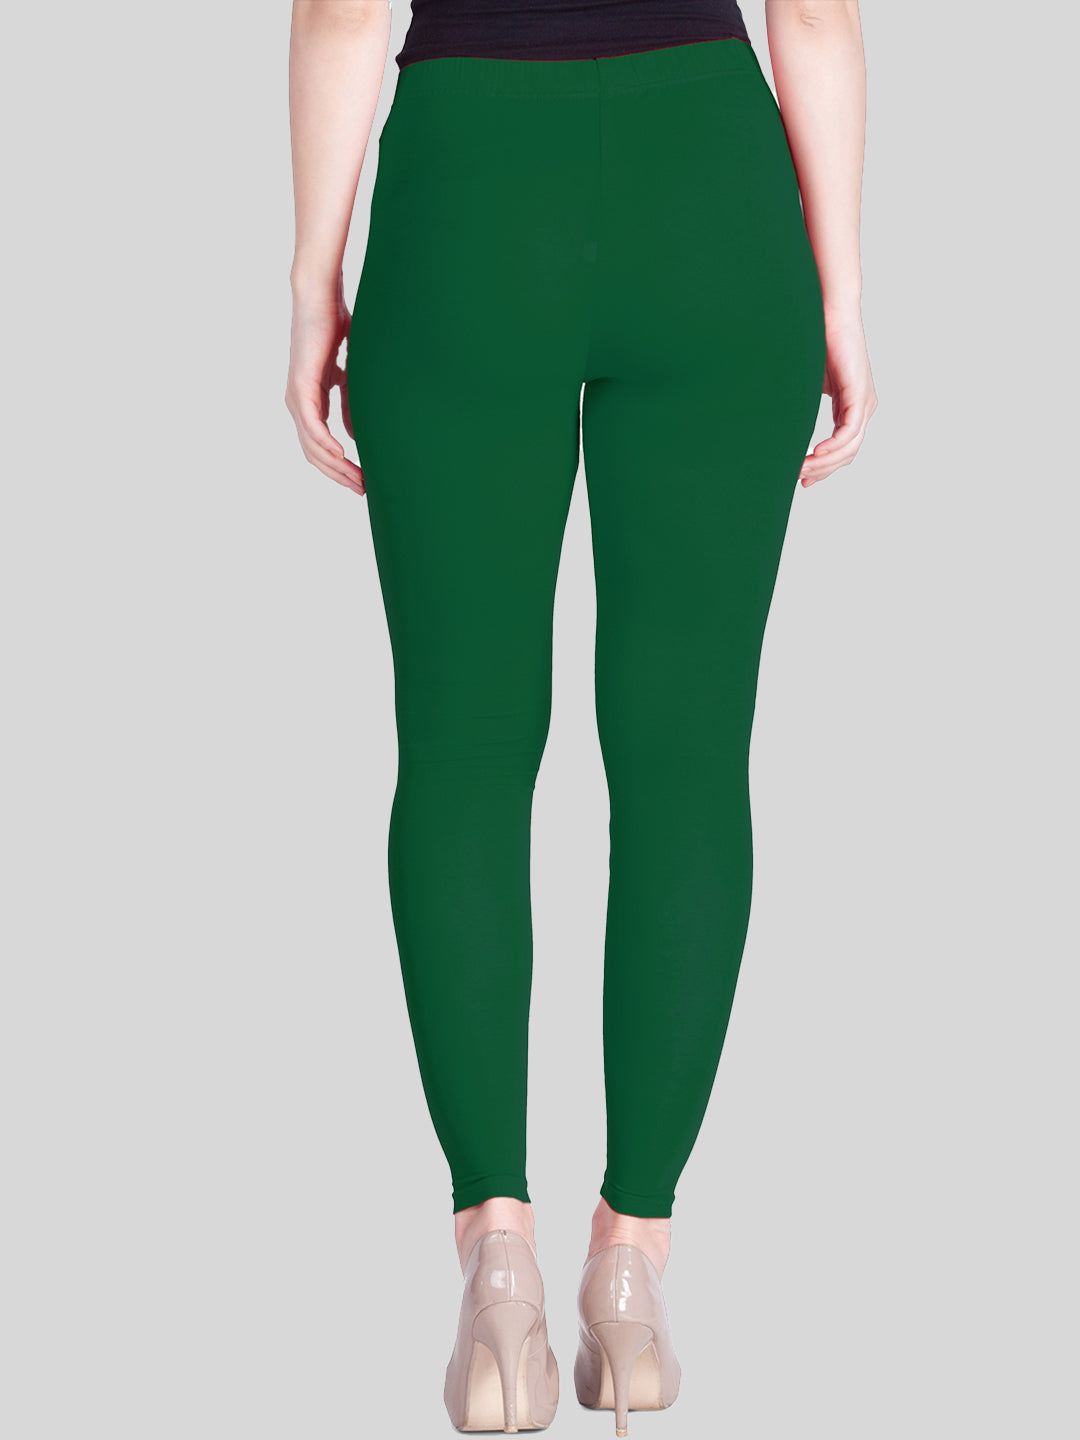 Buy Kryptic Dark Green Soild Crop Length Leggings for Women's Online @ Tata  CLiQ